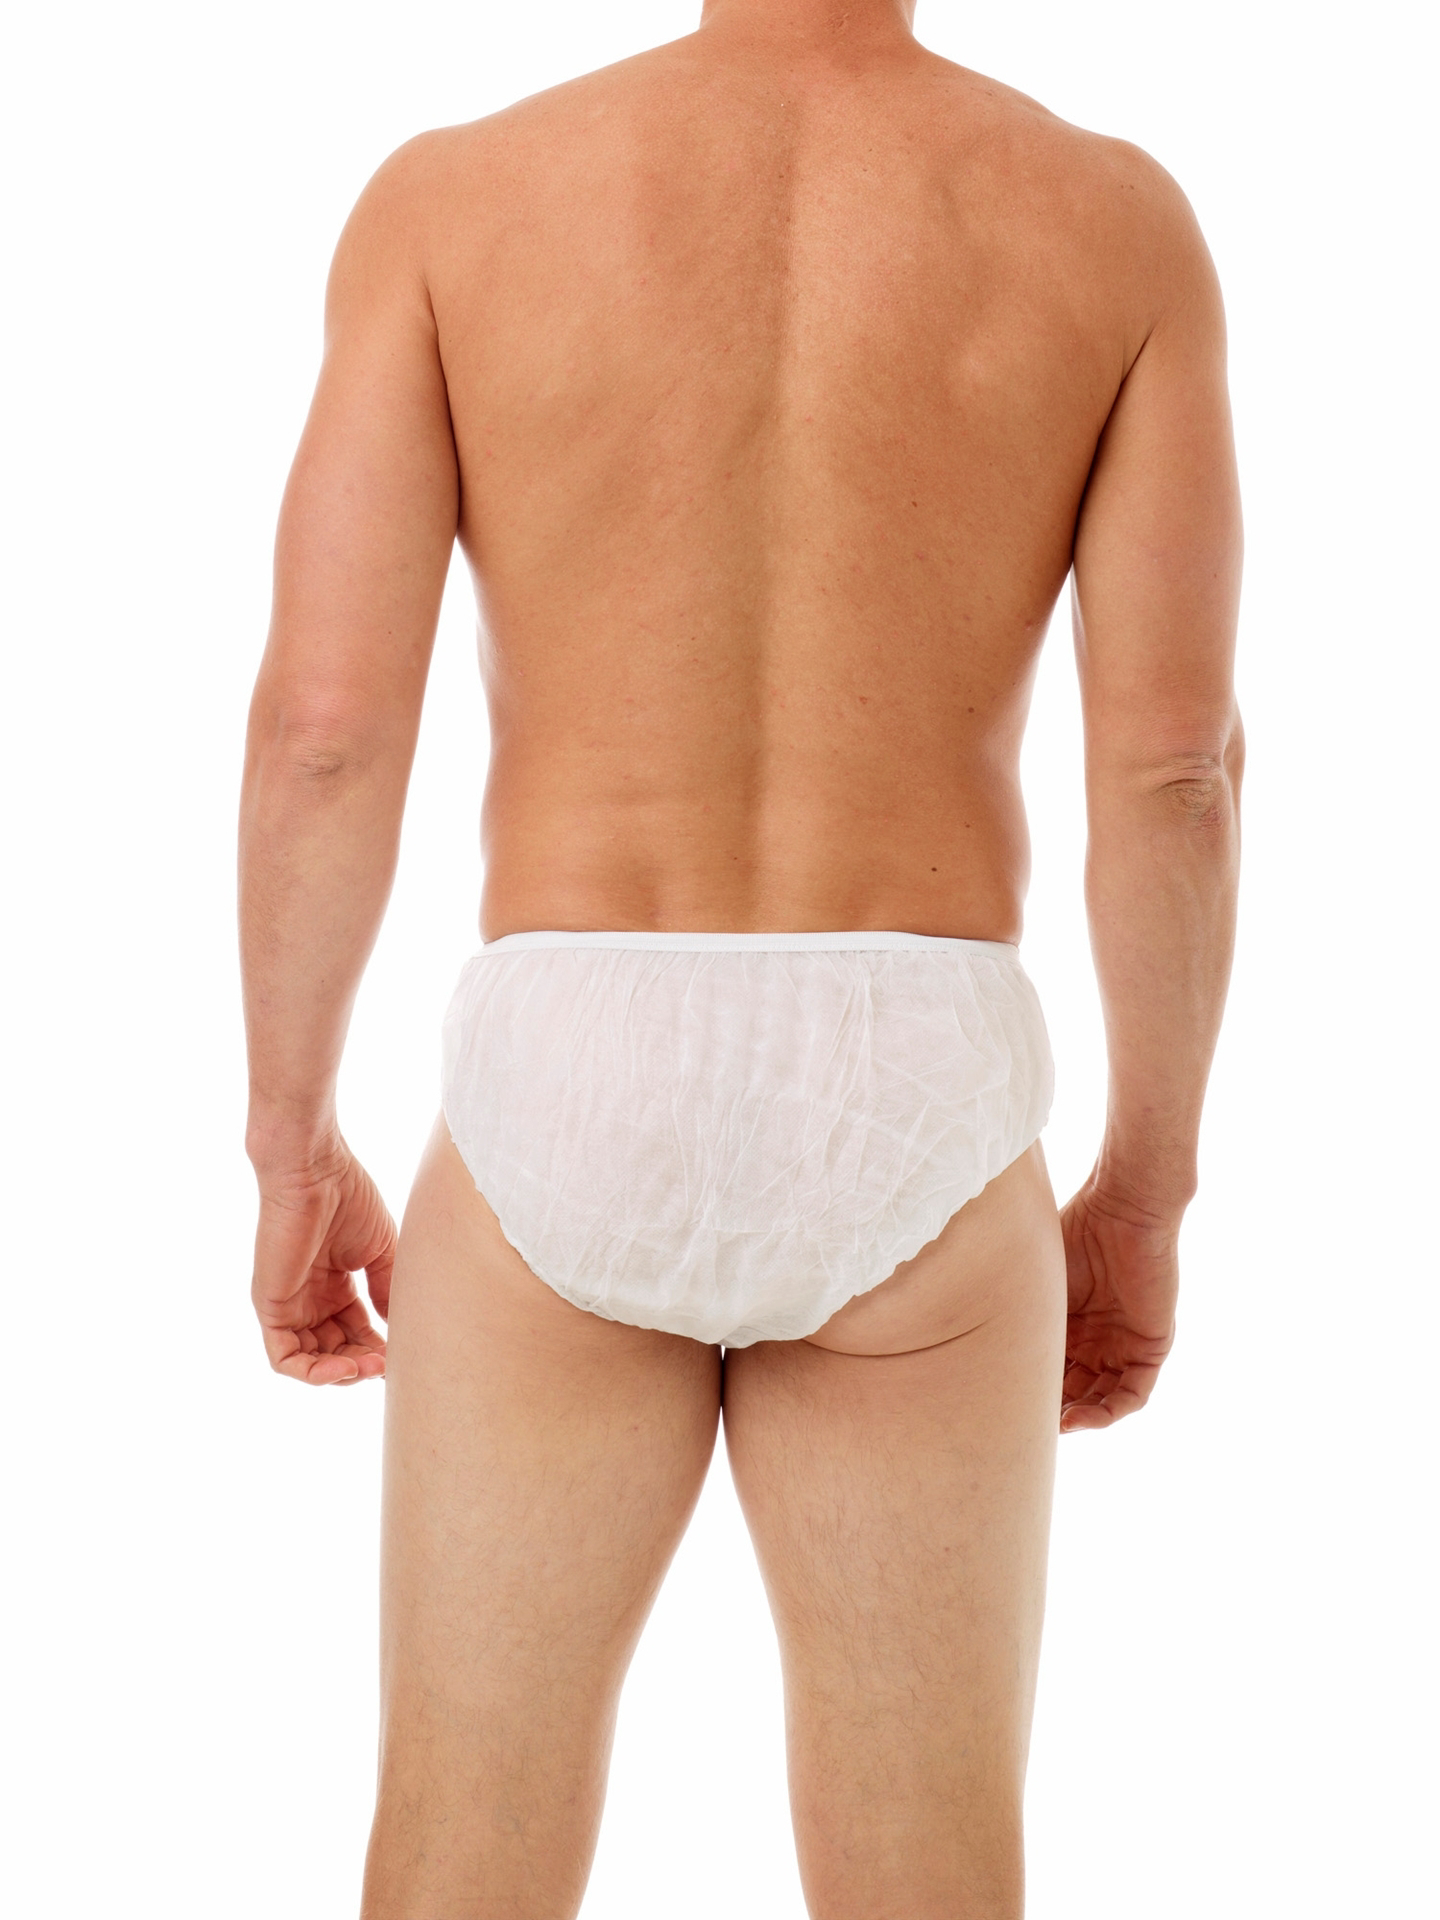 Briefs for Men, Medical Underwear